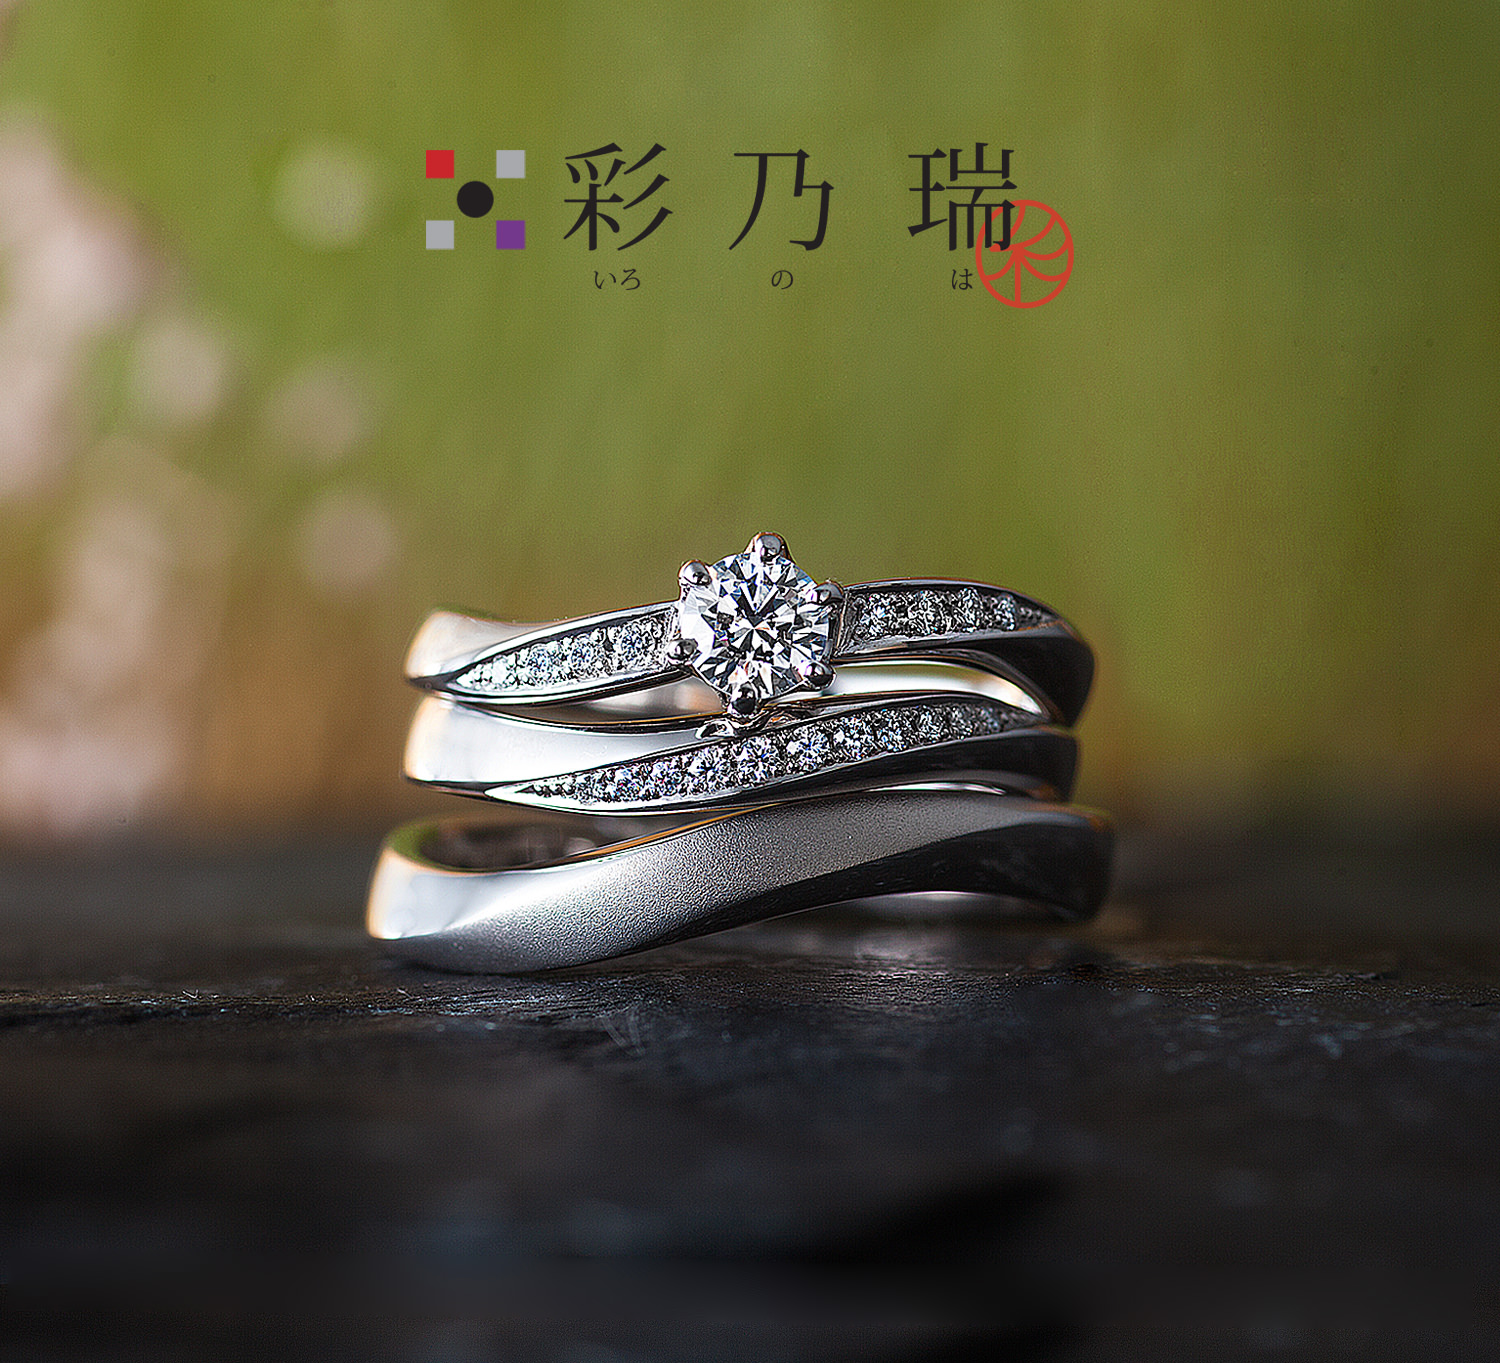 広島県広島広島市福山福山市のVANillAヴァニラの婚約指輪エンゲージリングと結婚指輪マリッジリングの和風ブランド彩乃瑞いろのは